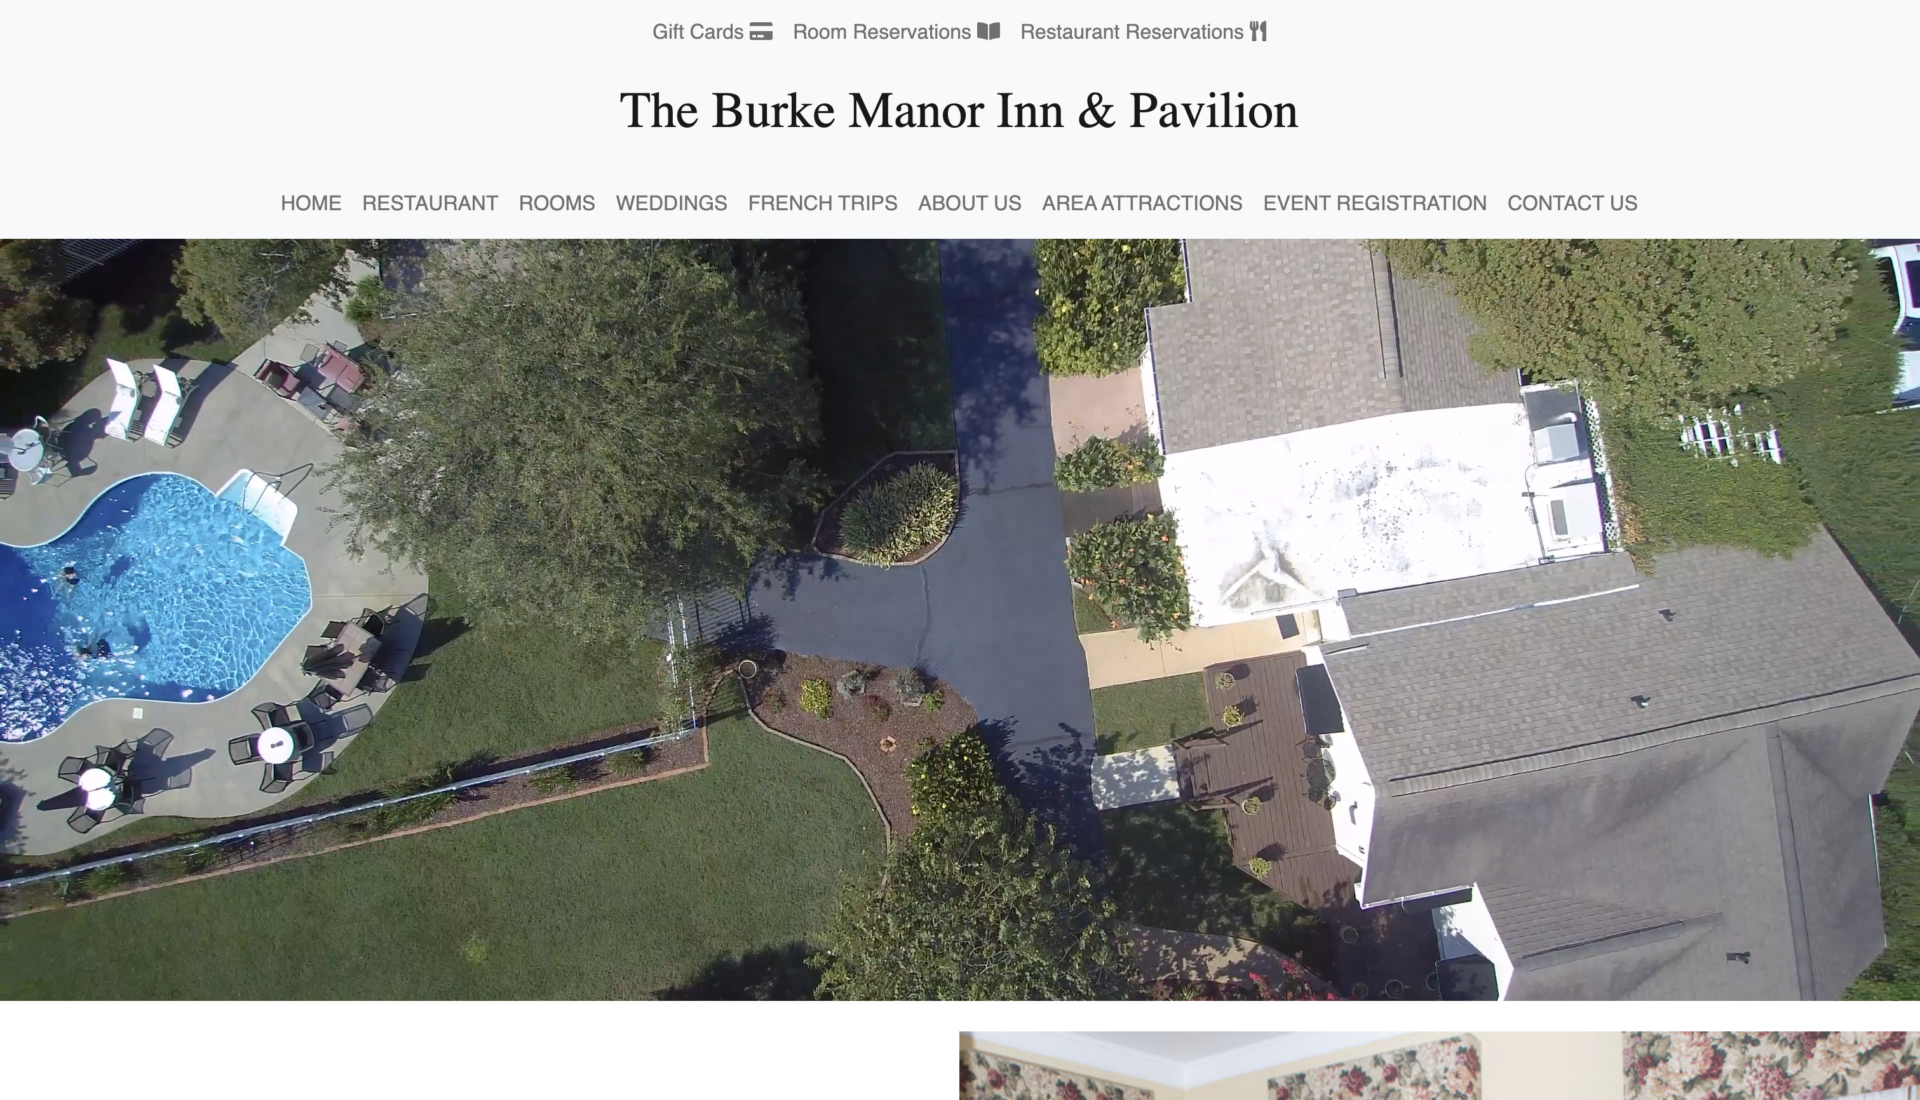 The Burke Manor Inn